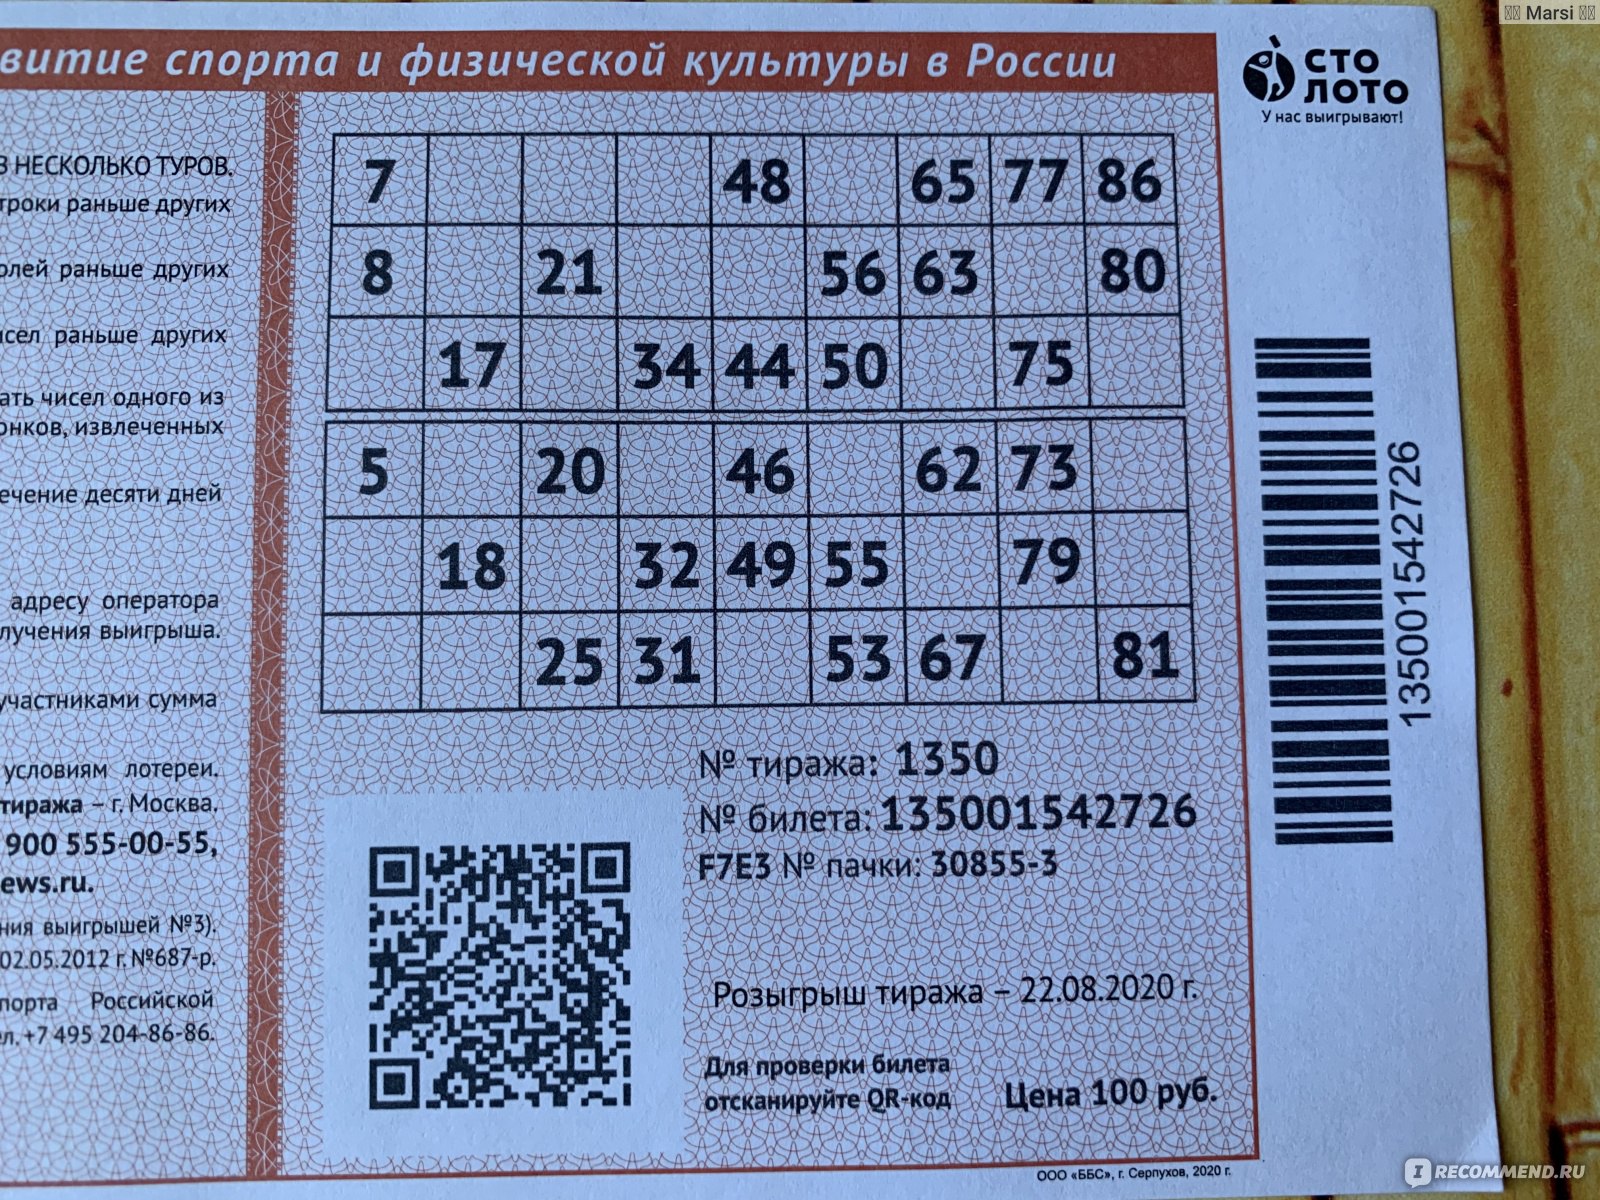 100 loto ru